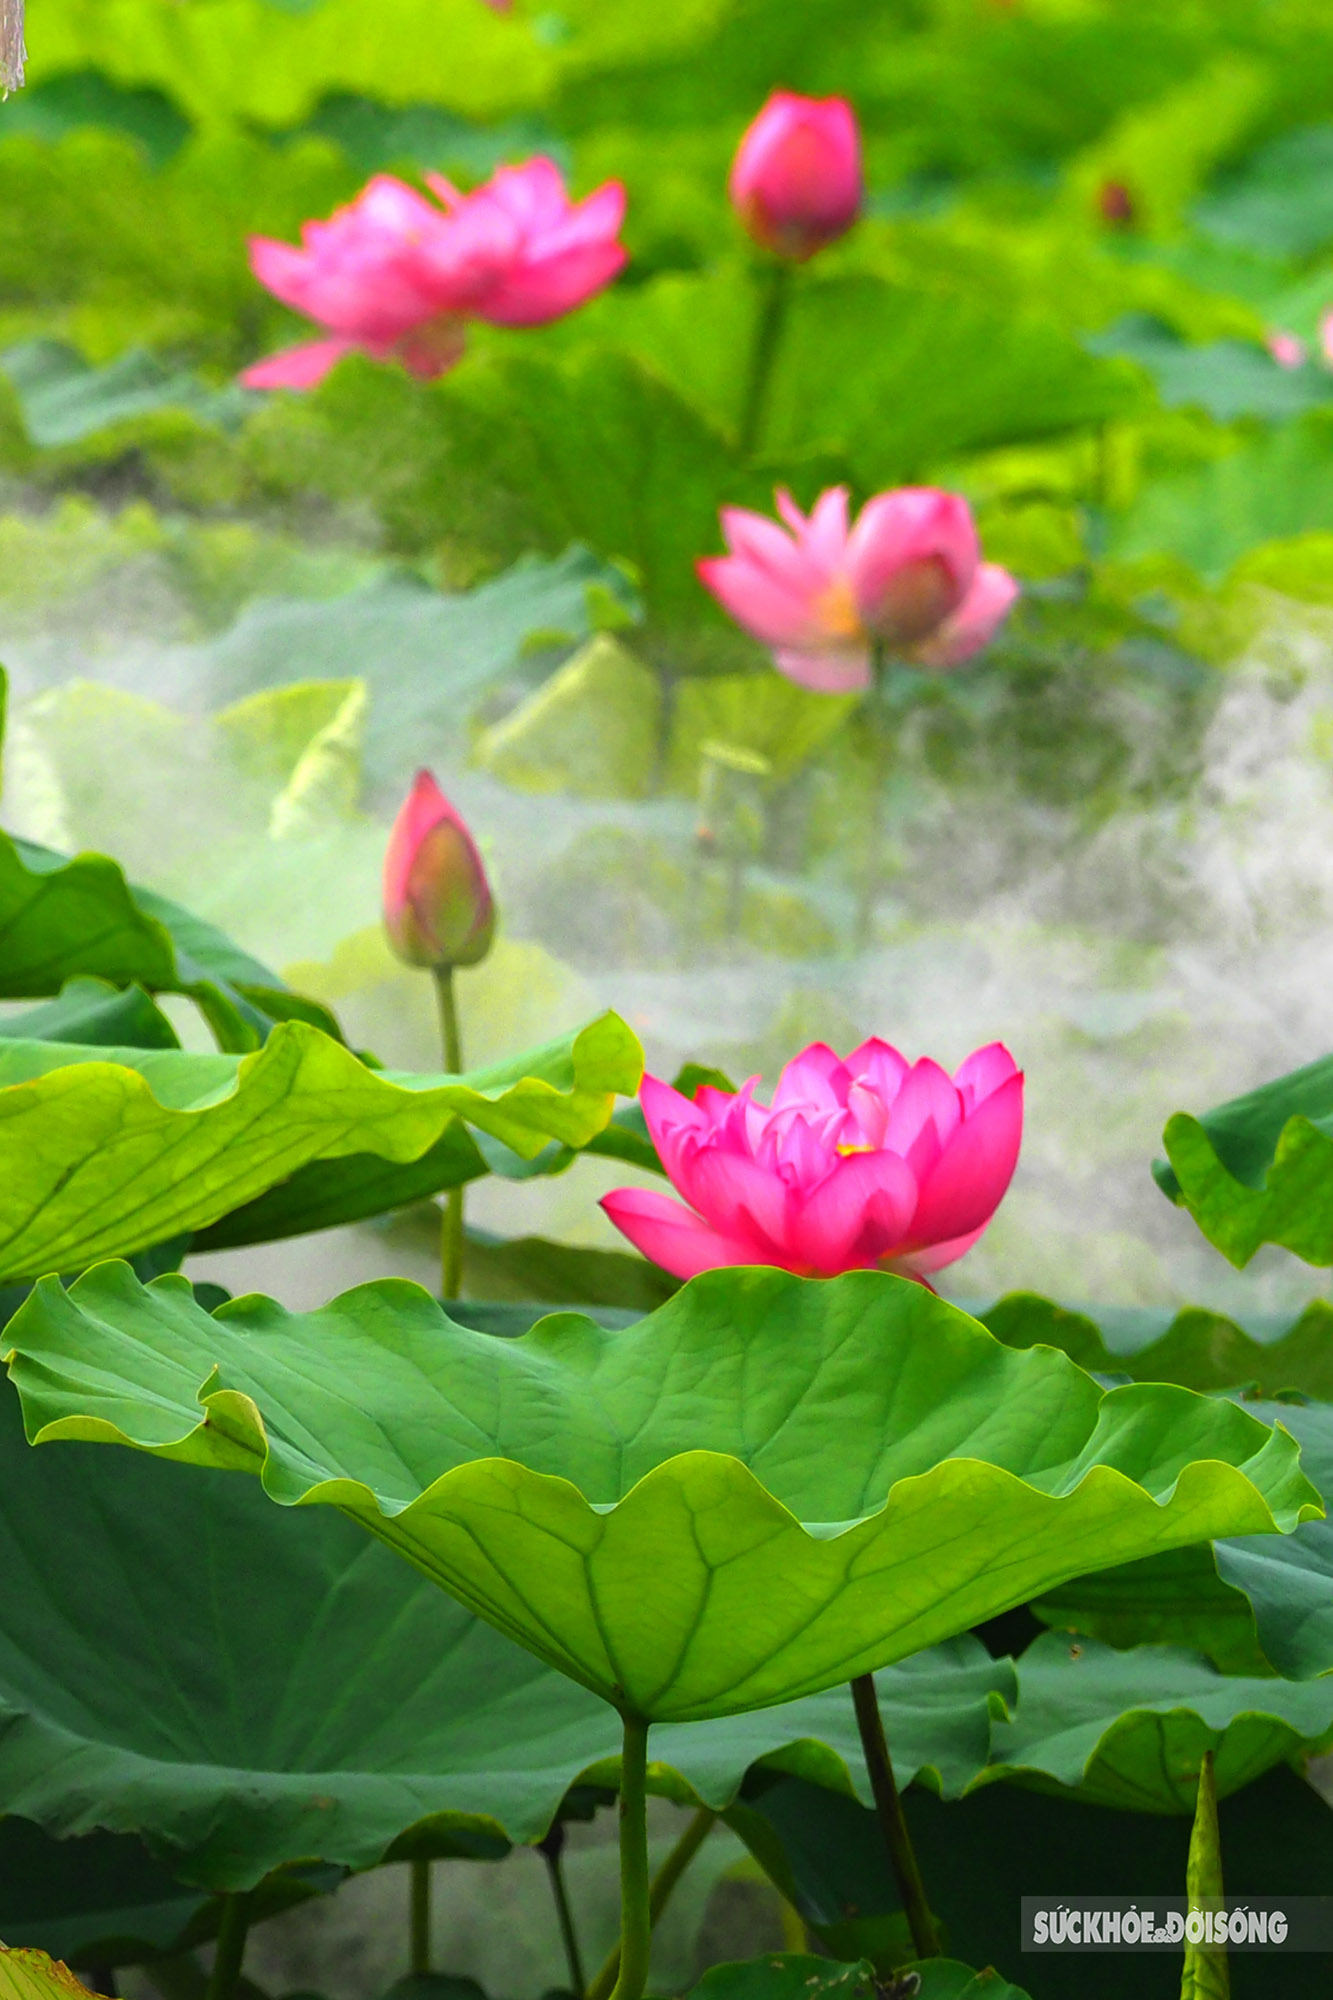 Sen Bách Diệp ở Hồ Tây là một trong những điểm đến nổi tiếng tại Hà Nội, thu hút du khách thập phương bởi vẻ đẹp huyền diệu của hàng ngàn cánh hoa sen trắng tinh khiết. Hãy thư giãn và tận hưởng cảm giác yên bình khi tham gia khám phá vẻ đẹp thiên nhiên này.